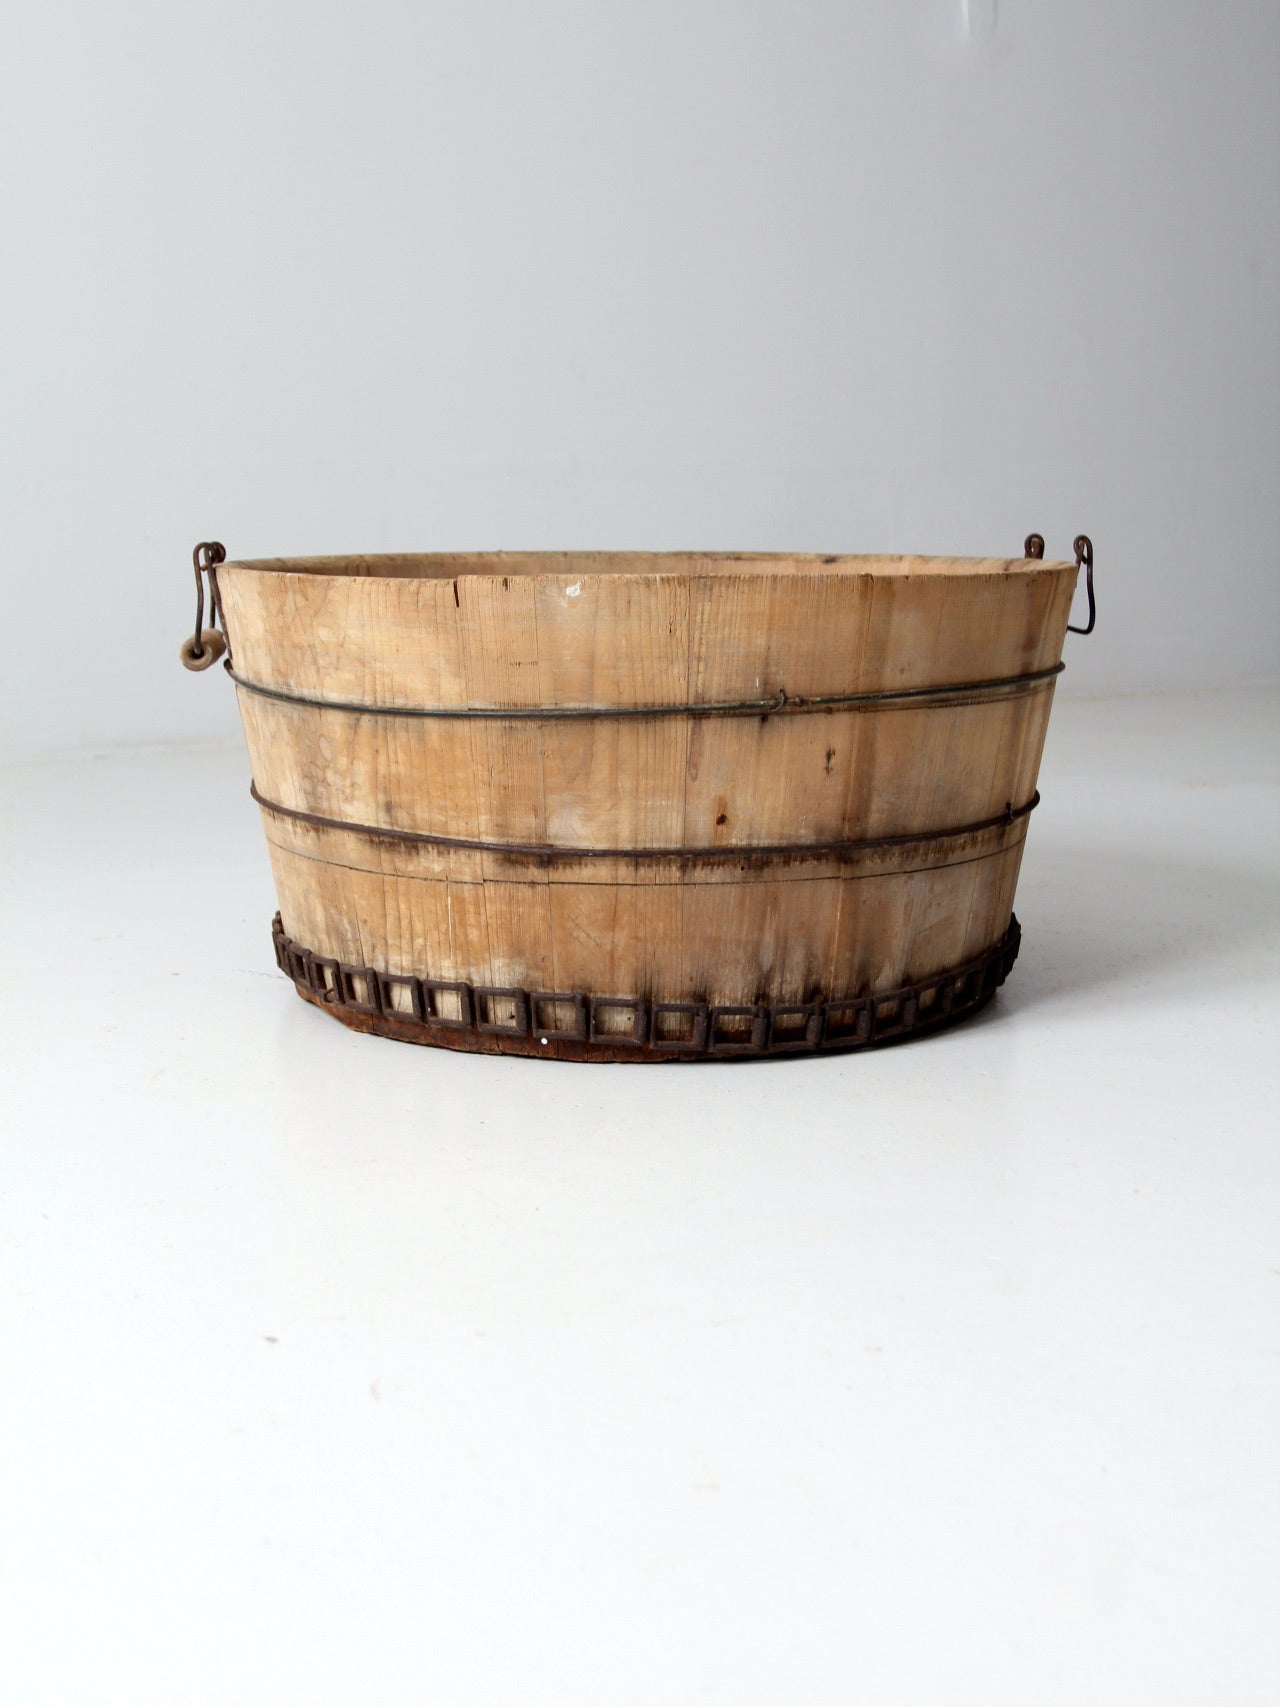 antique wooden barrel tub